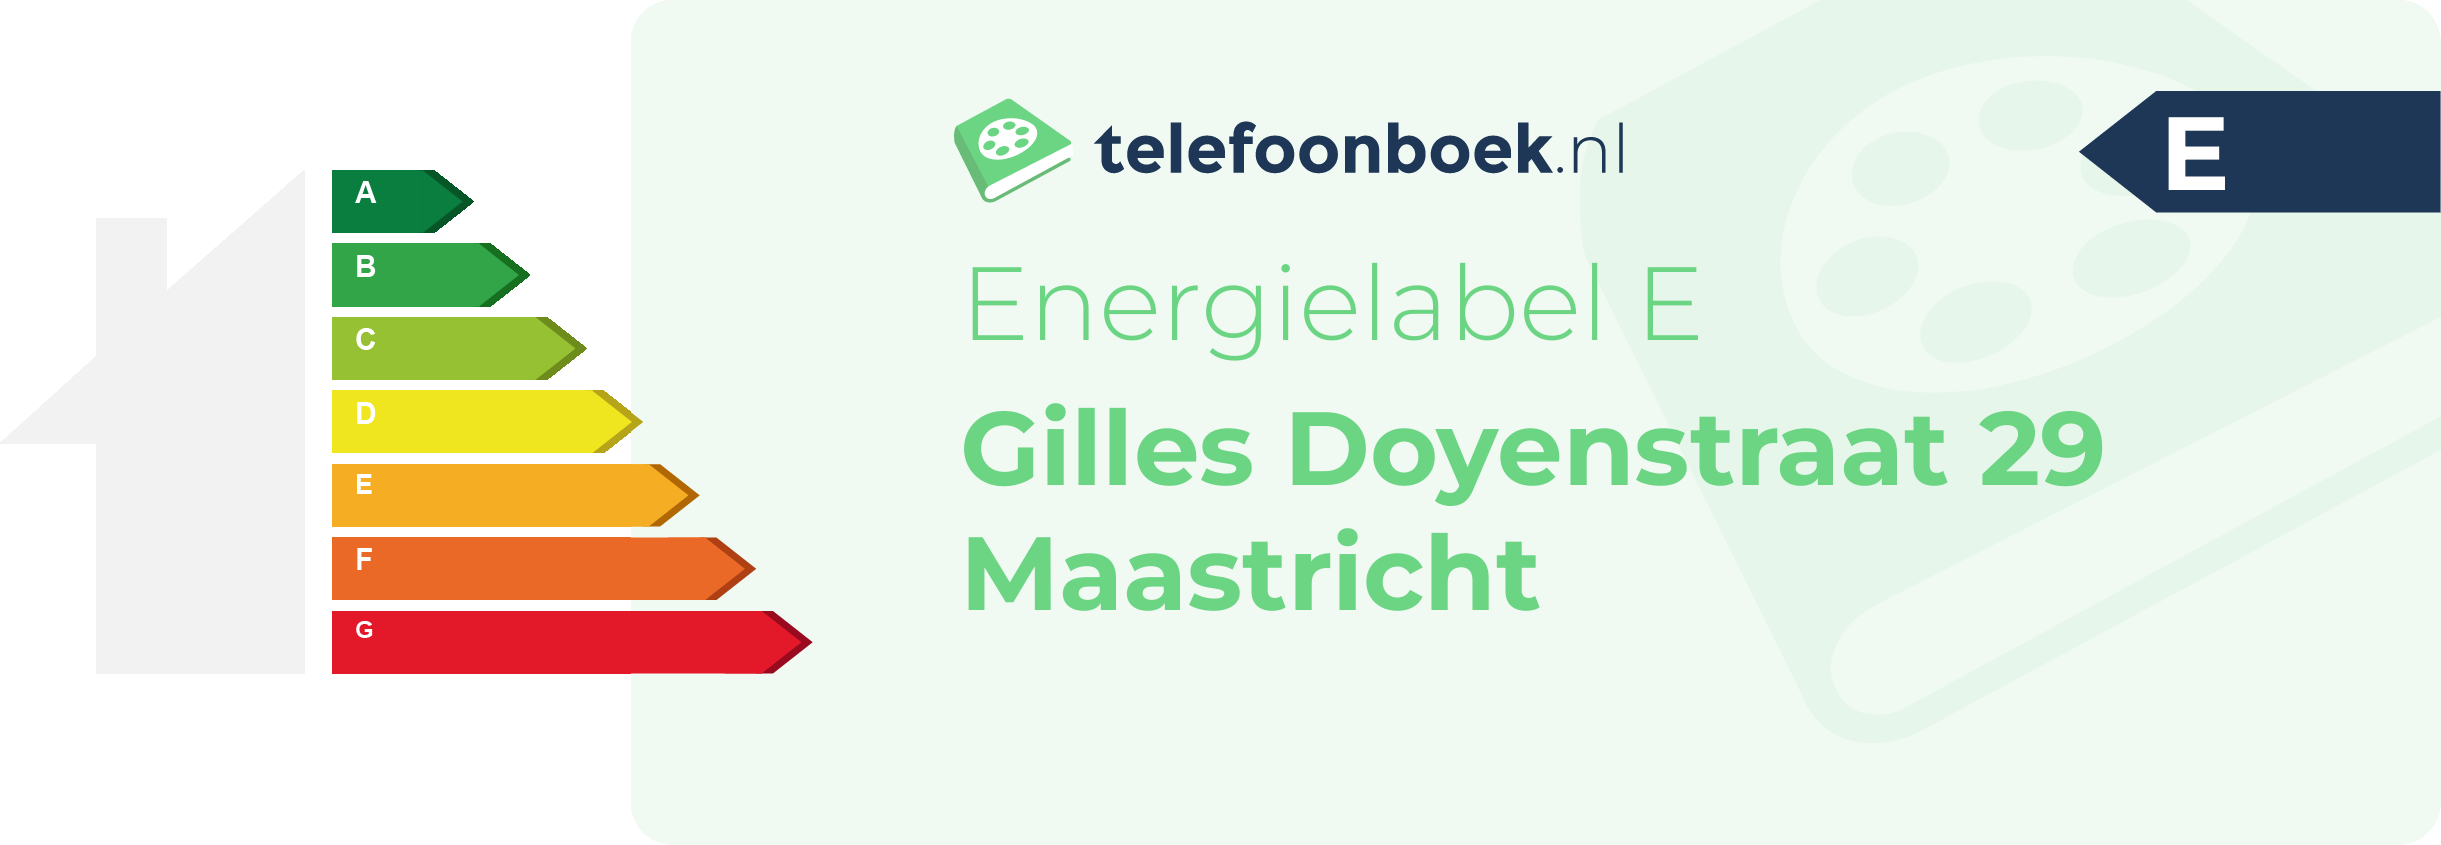 Energielabel Gilles Doyenstraat 29 Maastricht